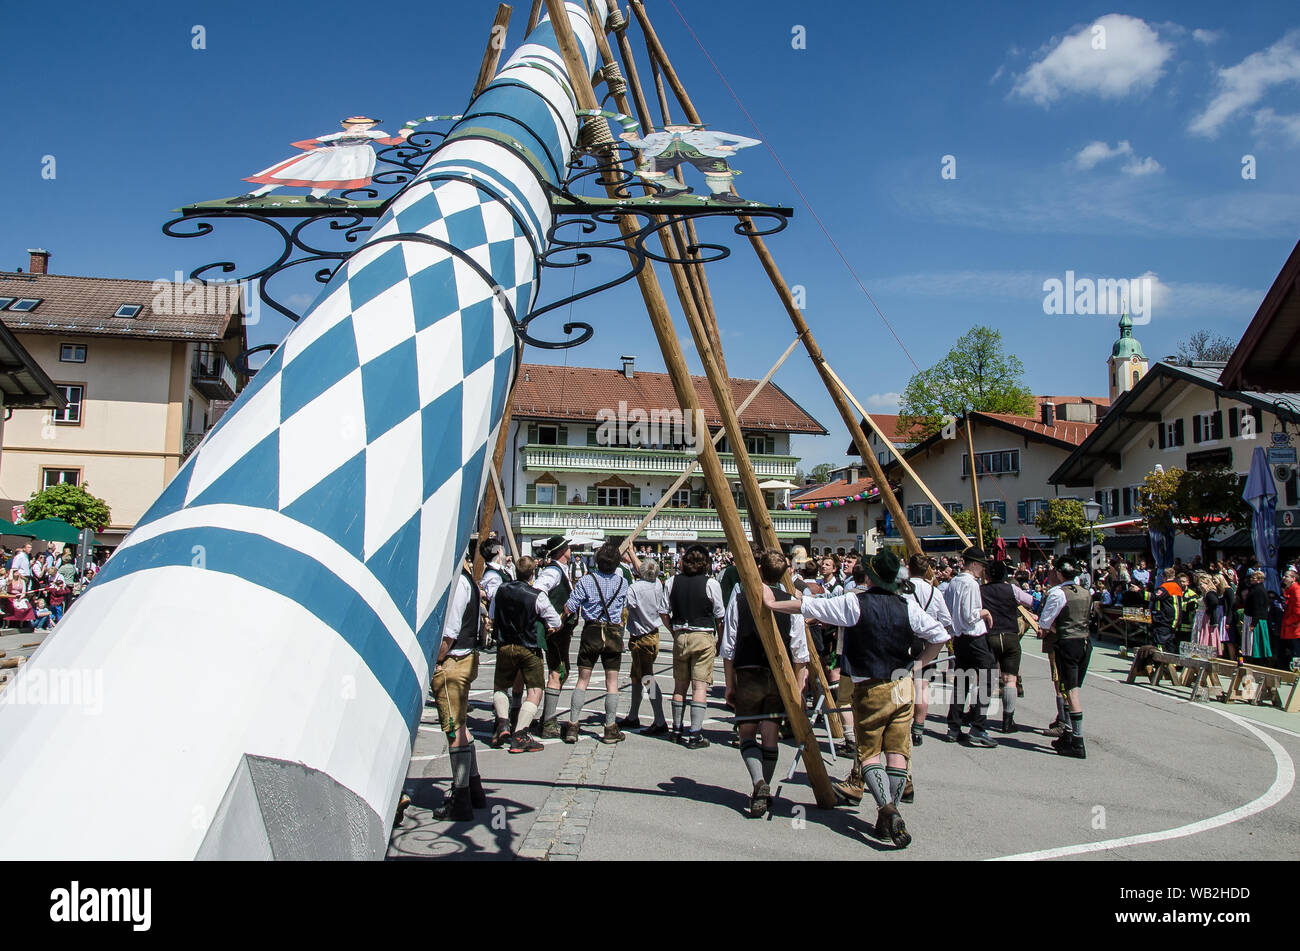 Eine der ältesten Traditionen noch in Oberbayern gepflegt ist die Einrichtung des traditionellen Maibaum zusammen mit Musik und Bier trinkt. Stockfoto